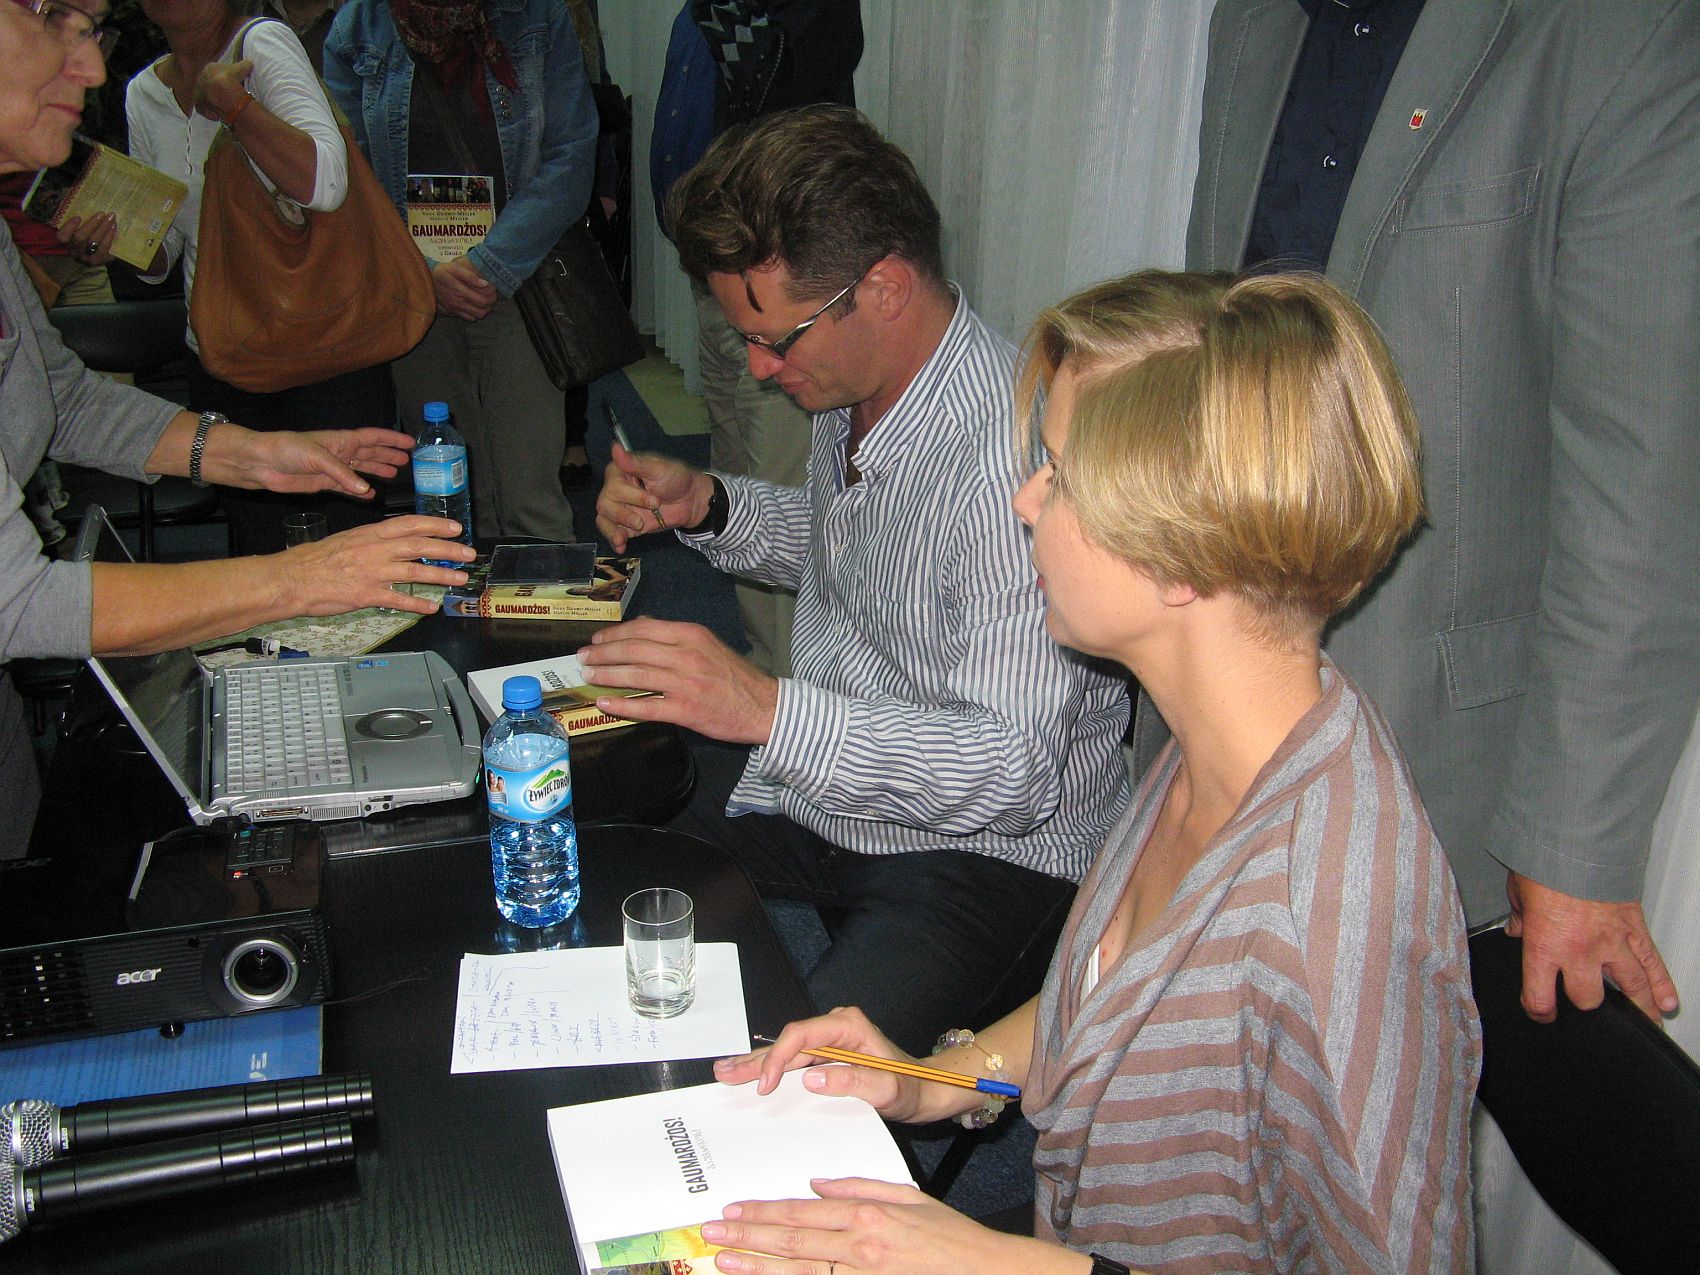 Goście sierpeckiej Biblioteki - Anna i Marcin Mellerowie - podpisują swoją książkę o Gruzji.